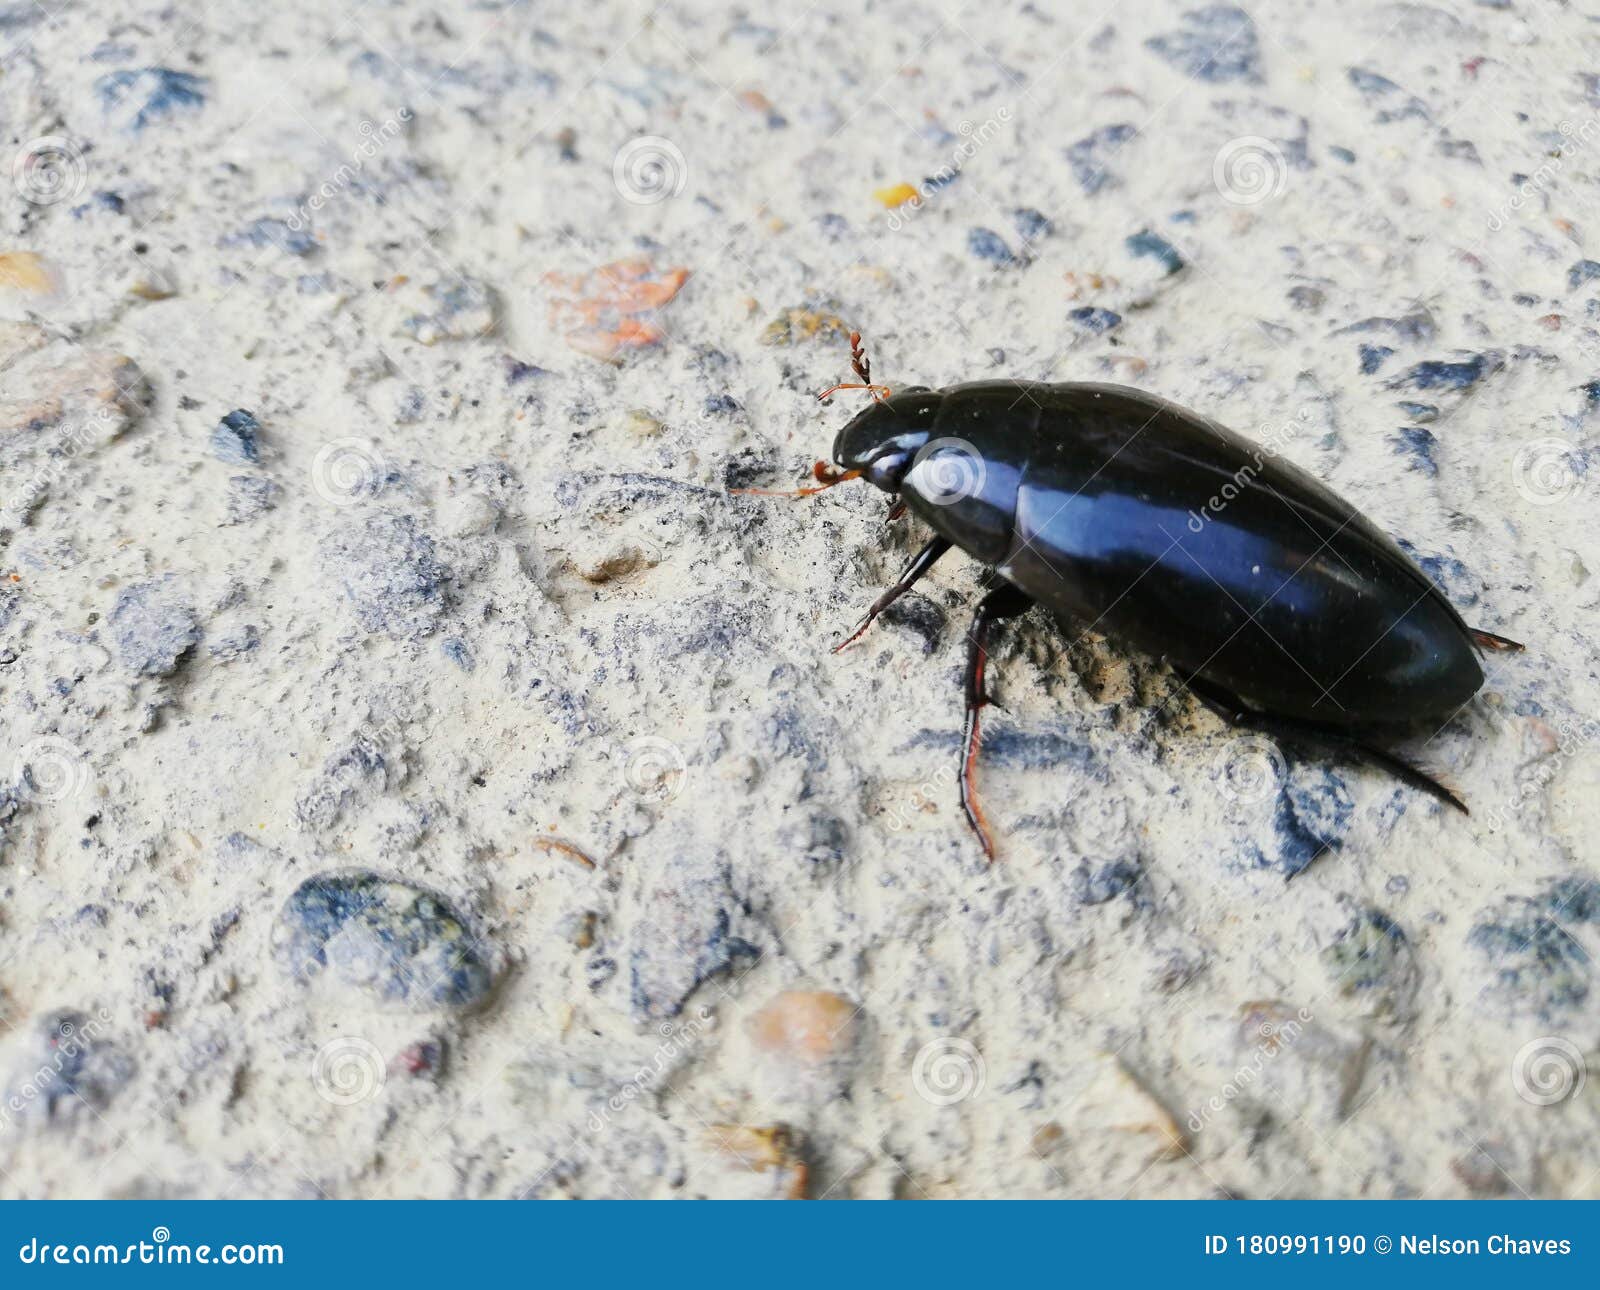 escarabajo negro con brillo en sus alas